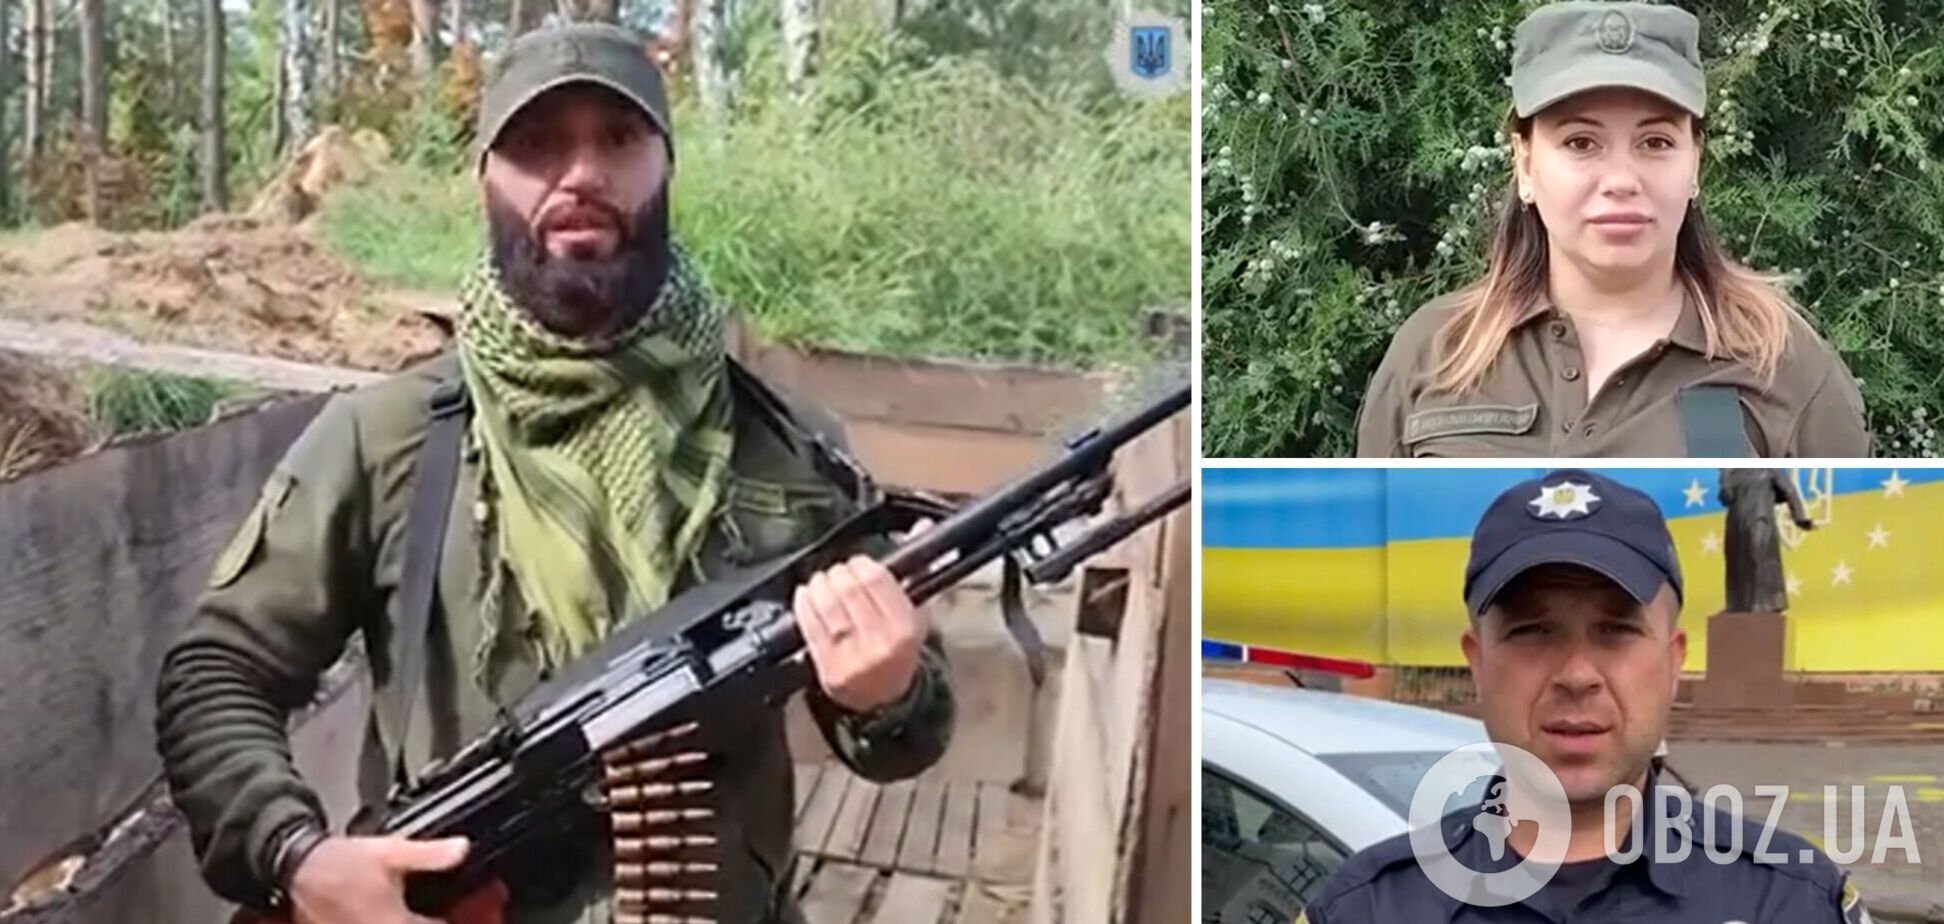 Ми всі – українці! Співробітники системи МВС різних національностей записали зворушливе відео на підтримку народу України